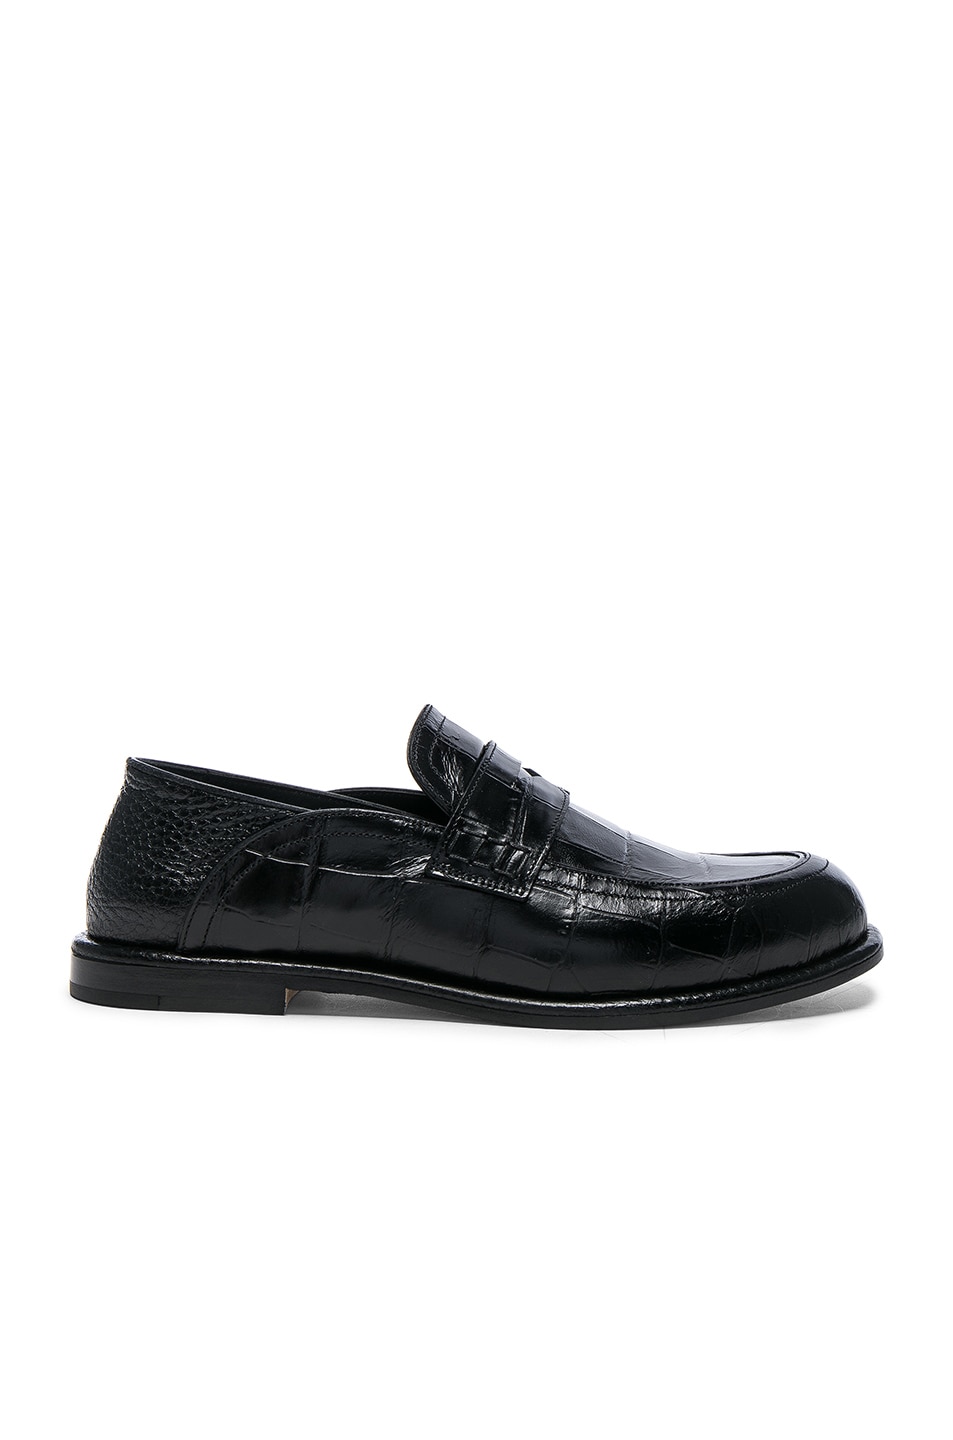 Loewe Croc Embossed Slip On Loafers in Black & Black | FWRD